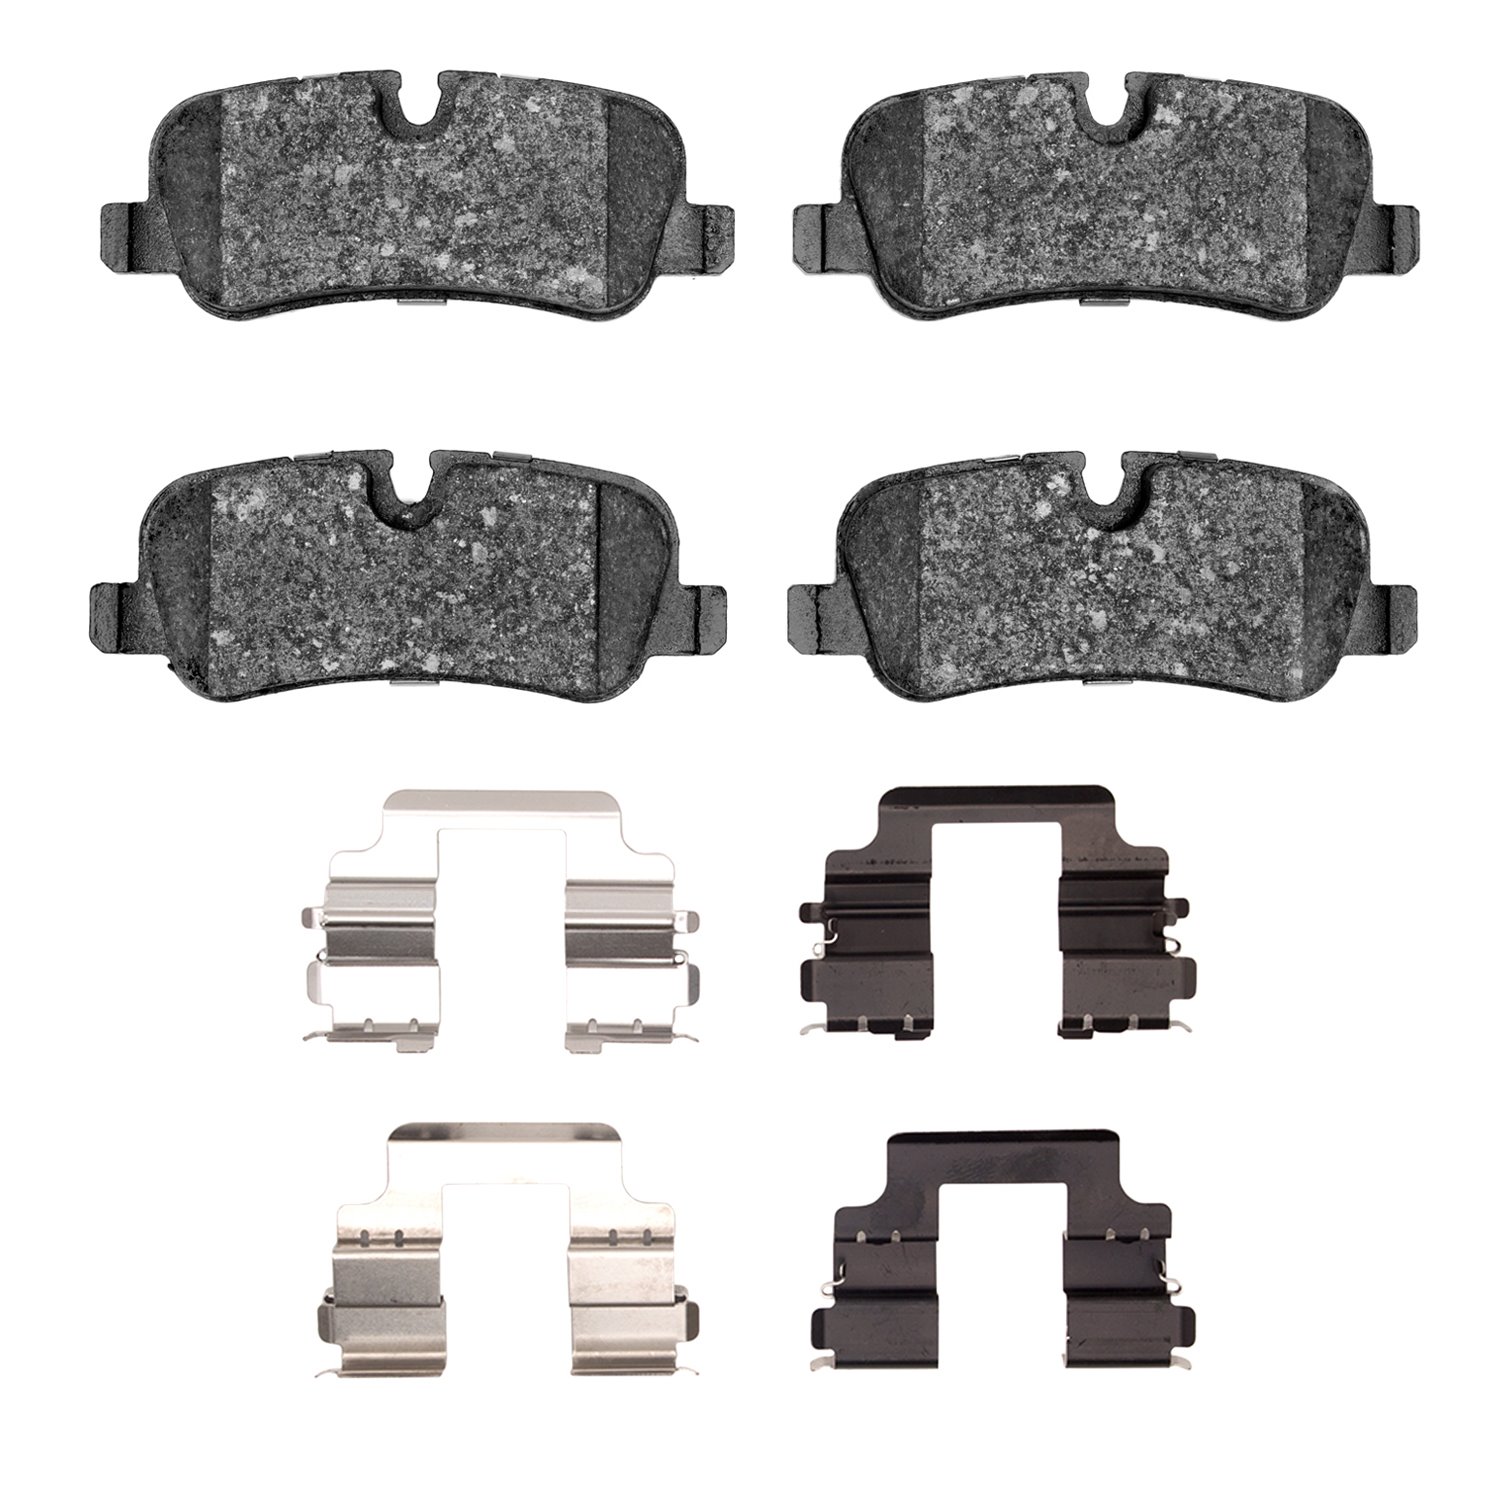 1310-1099-01 3000-Series Ceramic Brake Pads & Hardware Kit, 2010-2013 Land Rover, Position: Rear